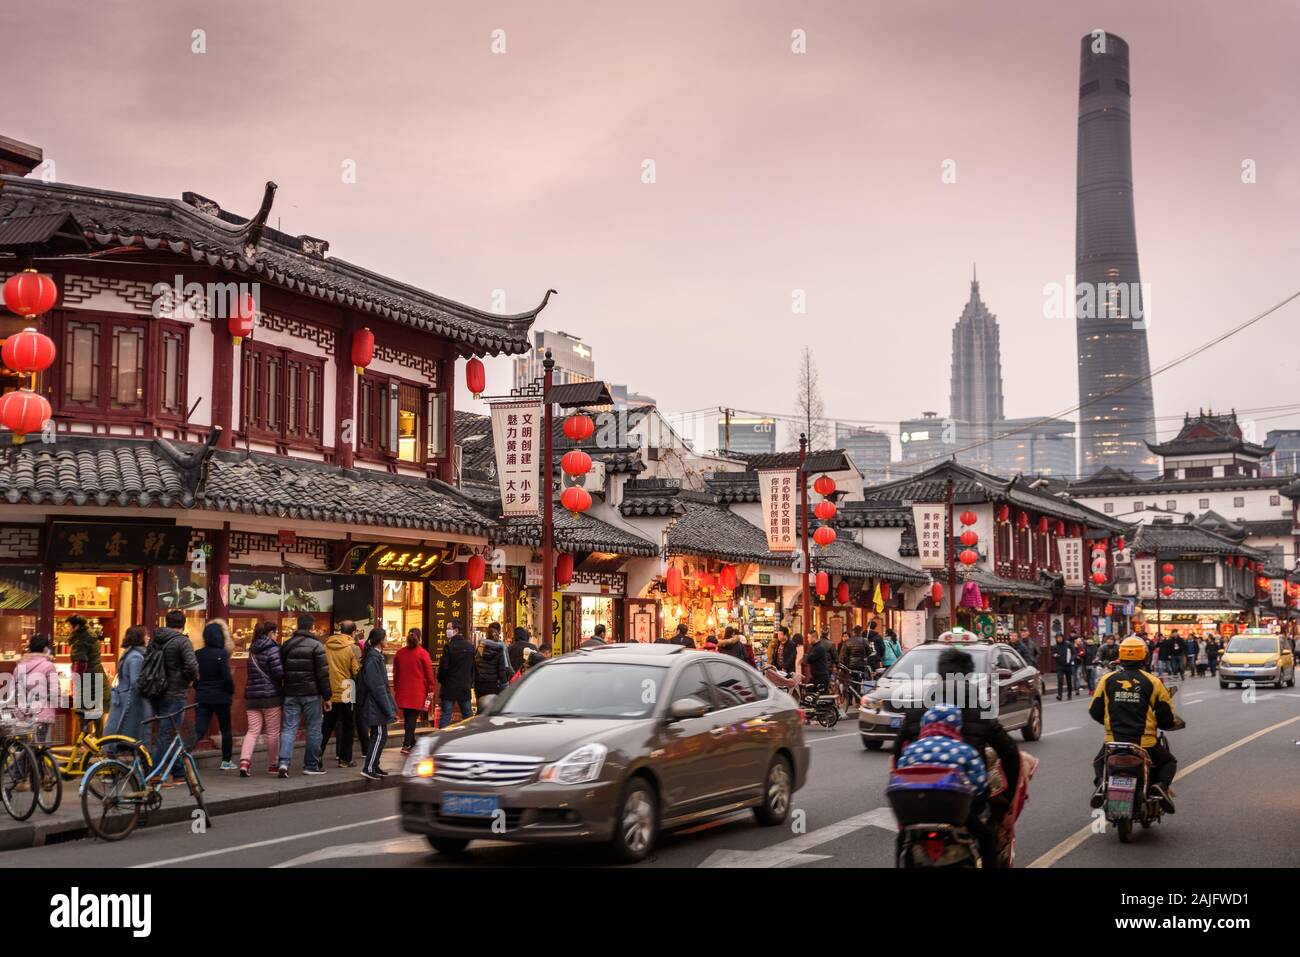 Shanghai, China: Straßenszene in der Altstadt mit traditionellen asiatischen Gebäuden, Personenkraftwagen Motorräder und Shanghai Tower Wolkenkratzer Stockfoto